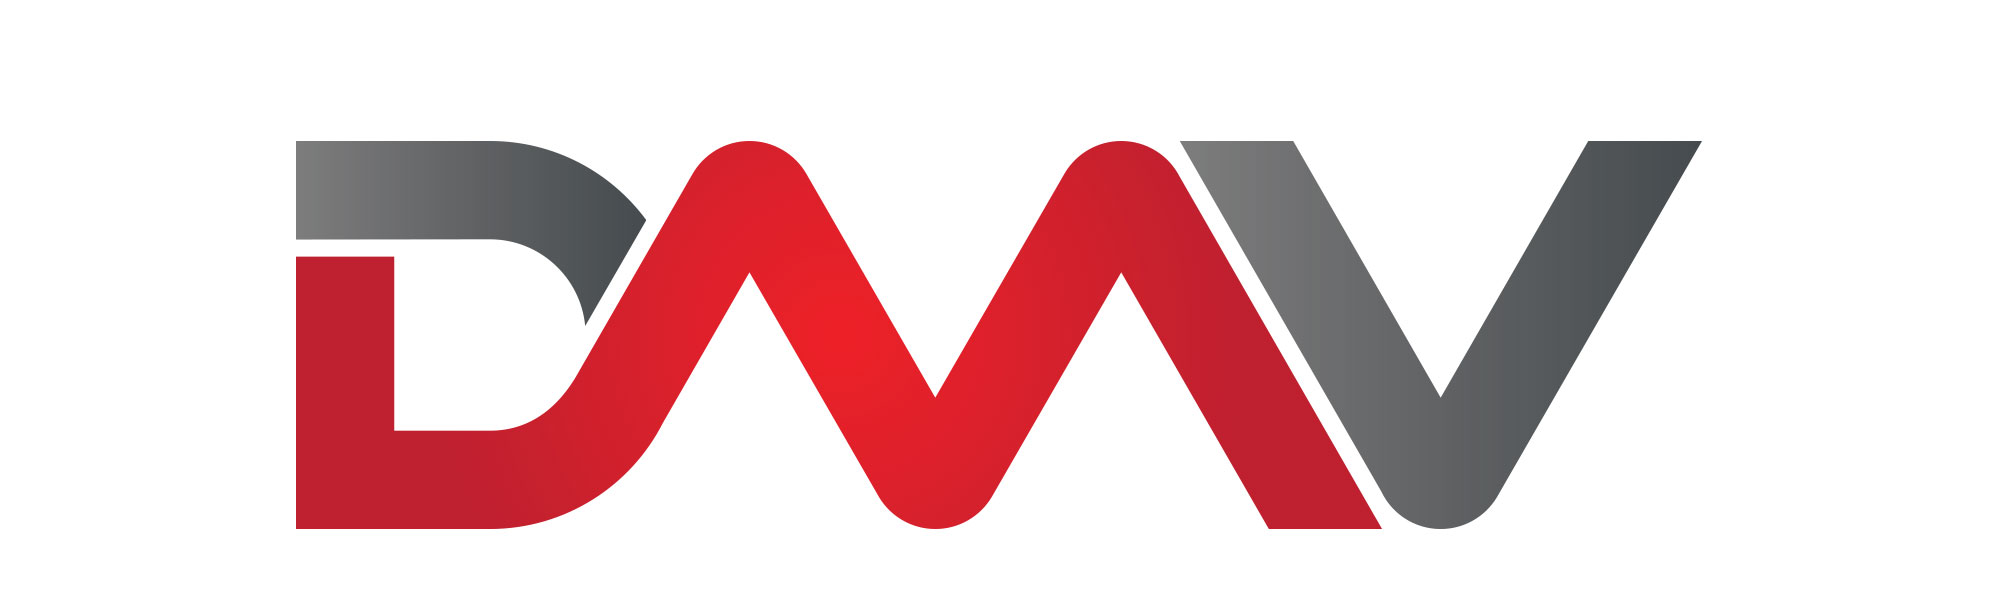 dmv logo redesign